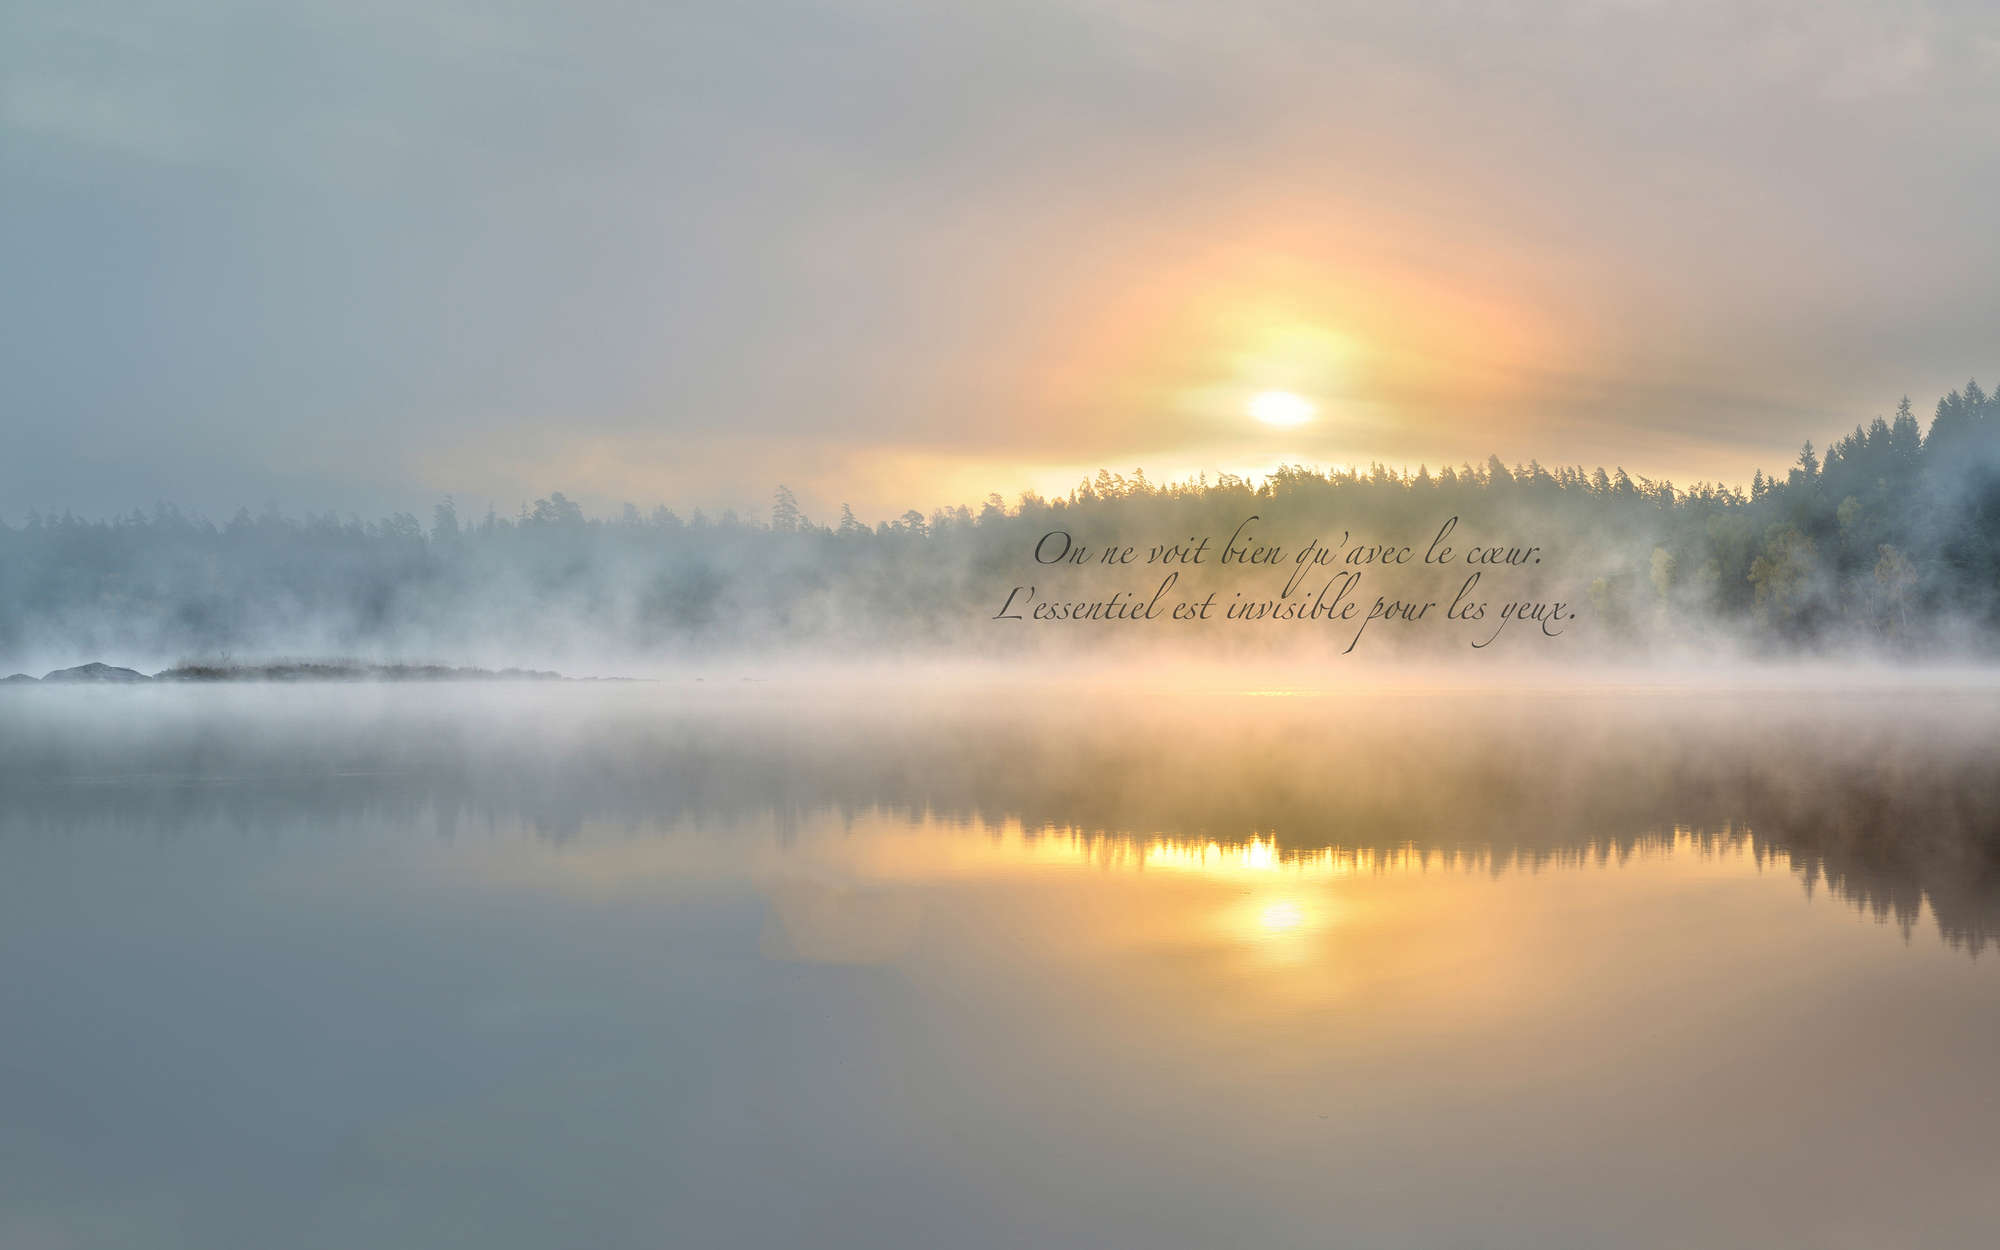             Fotomurali lago nebbioso con scritte - Pile liscio premium
        